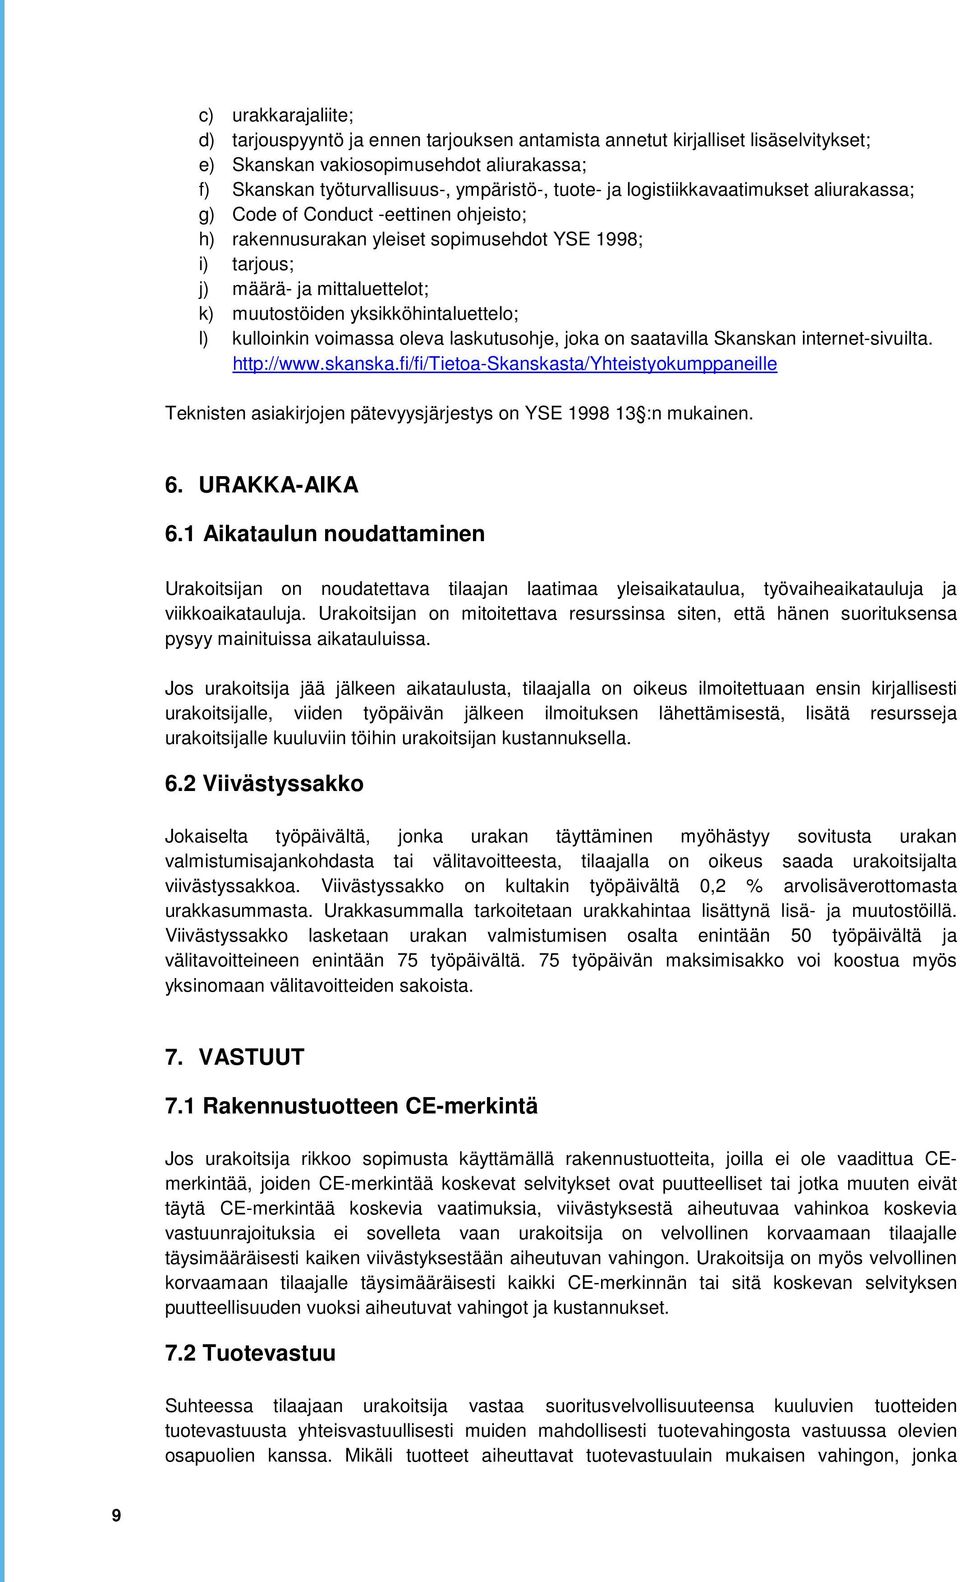 yksikköhintaluettelo; l) kulloinkin voimassa oleva laskutusohje, joka on saatavilla Skanskan internet-sivuilta. http://www.skanska.